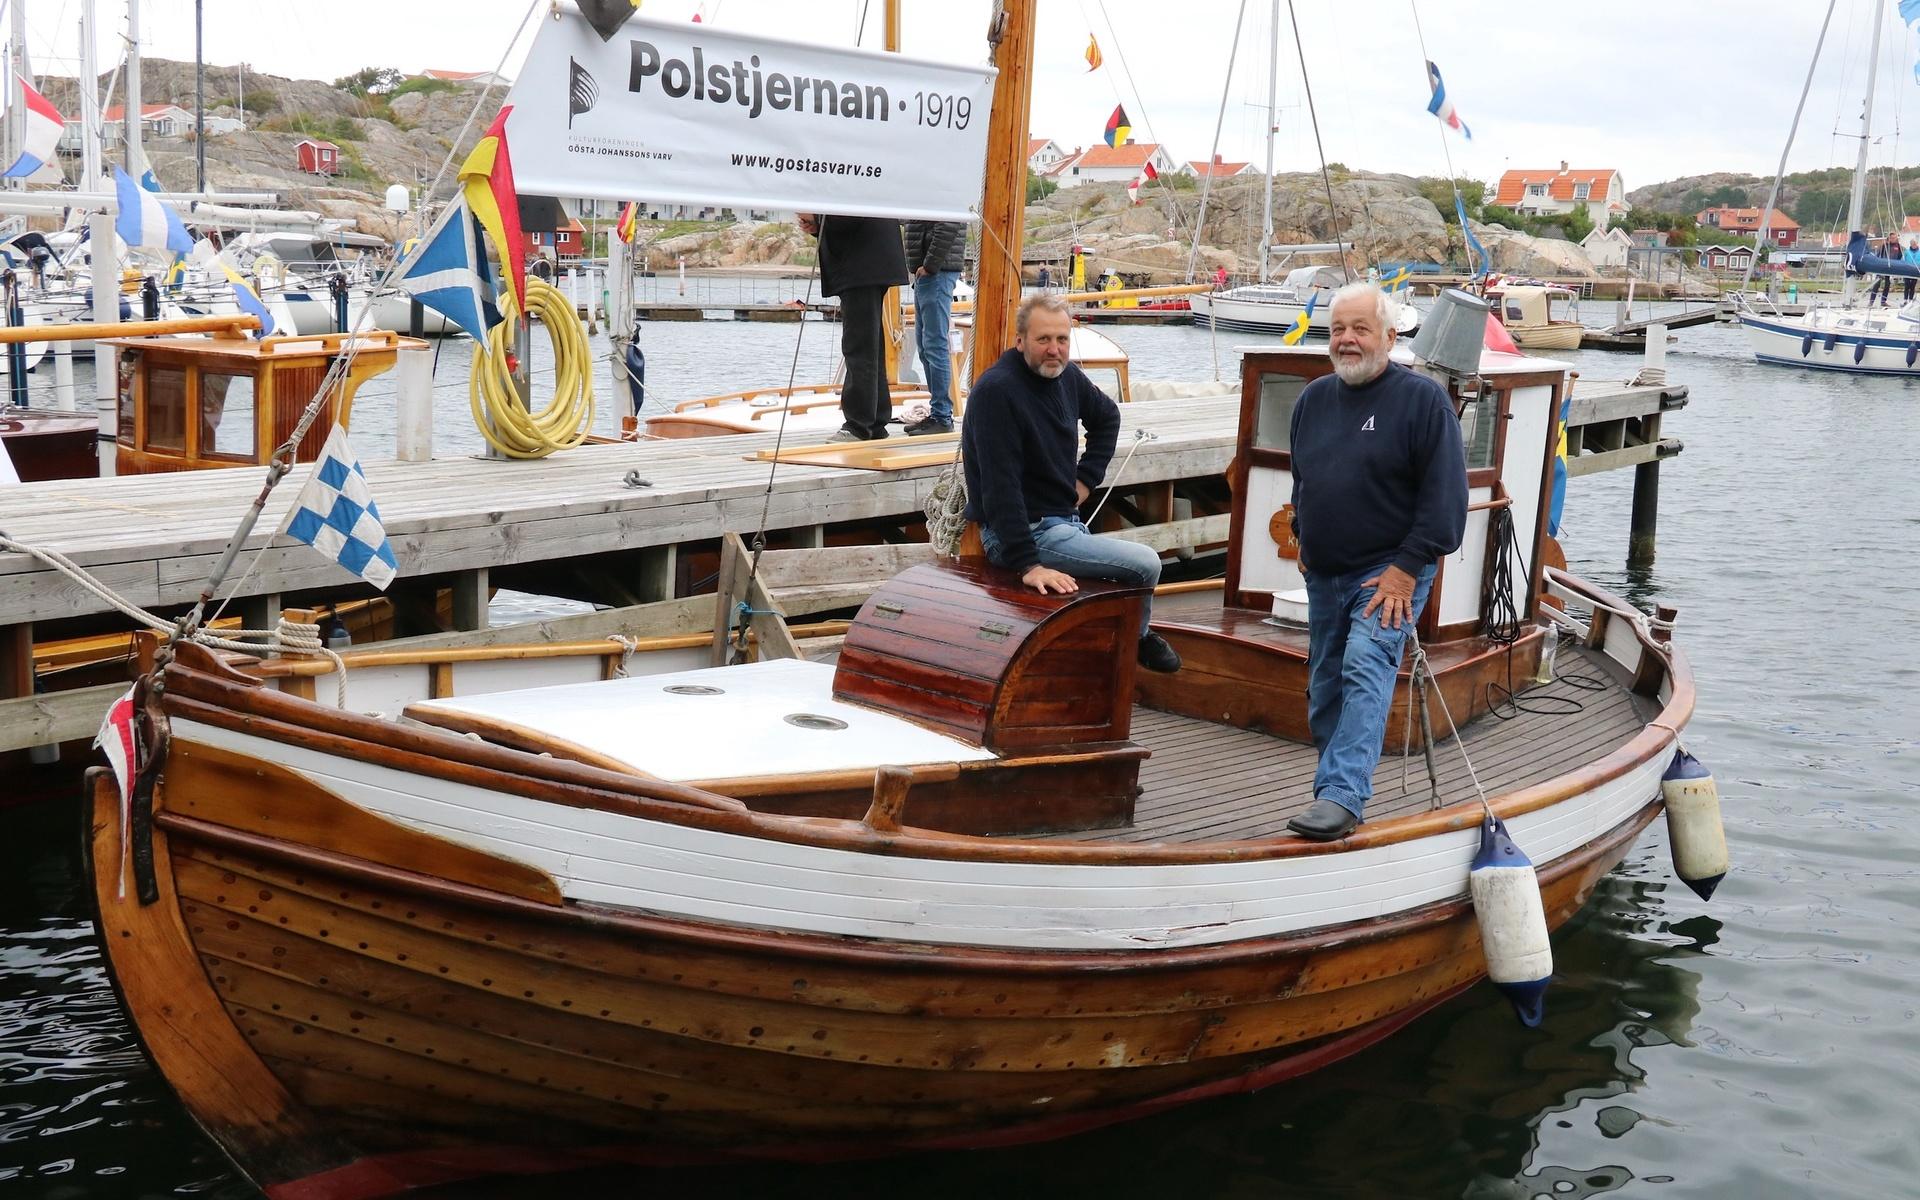 1919 byggdes Polstjernan, Anders Åhman och Magnus Zackrisson visade under öppet varv upp den gamla båten som i dag har hemmahamn Kungsviken. 